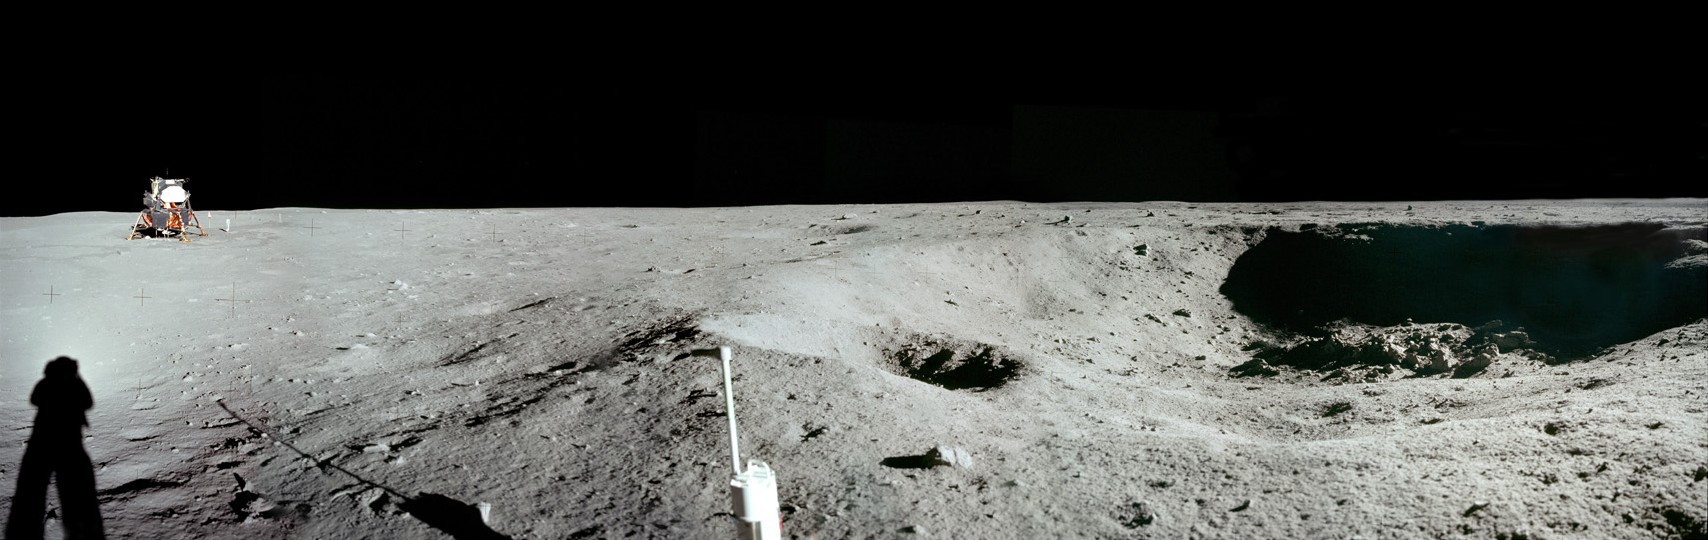 Apolo 11: Vista Panorámica del Cráter Este